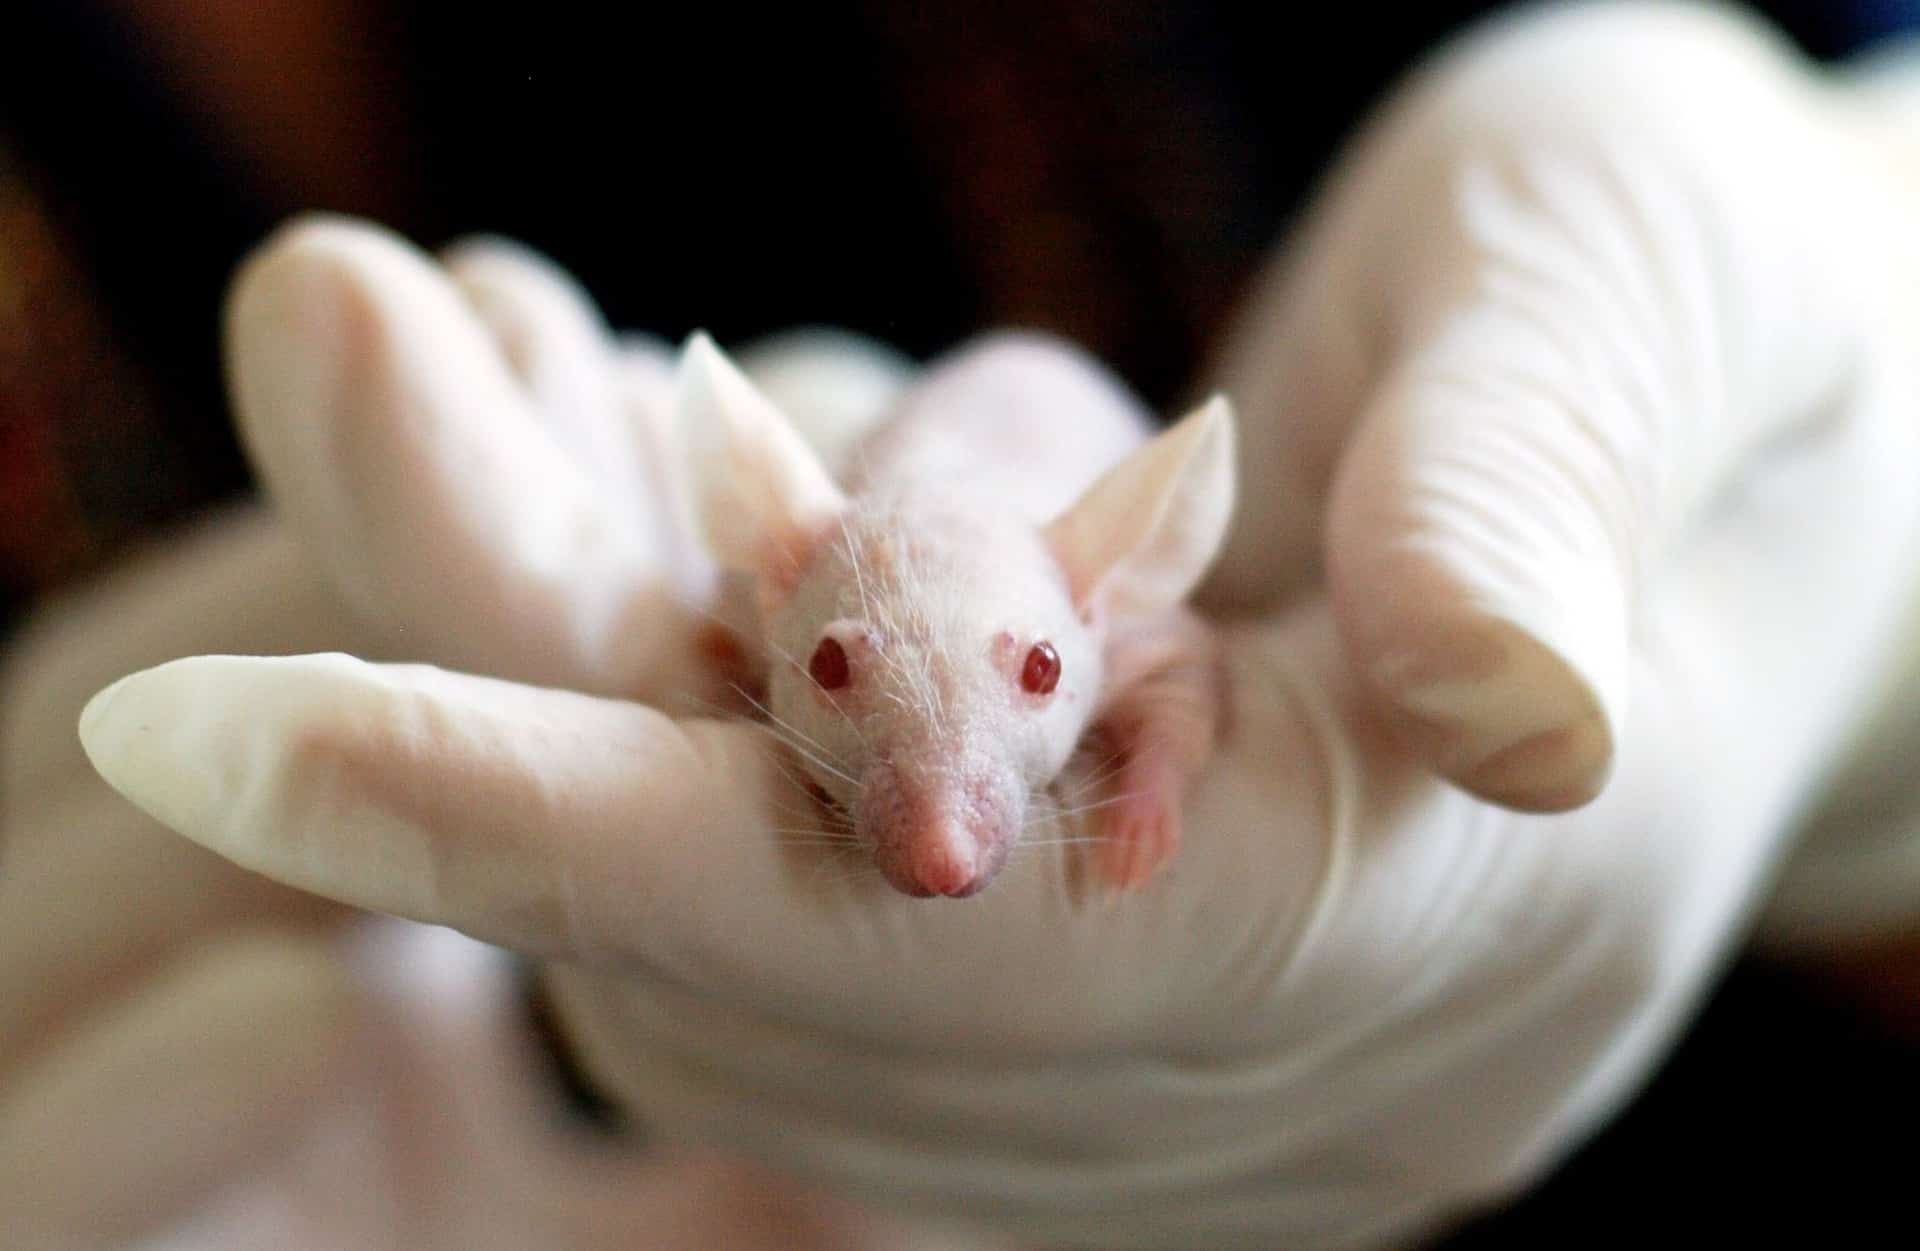 La Comisión Europea respalda la eliminación gradual del uso de animales en experimentos y pruebas químicas